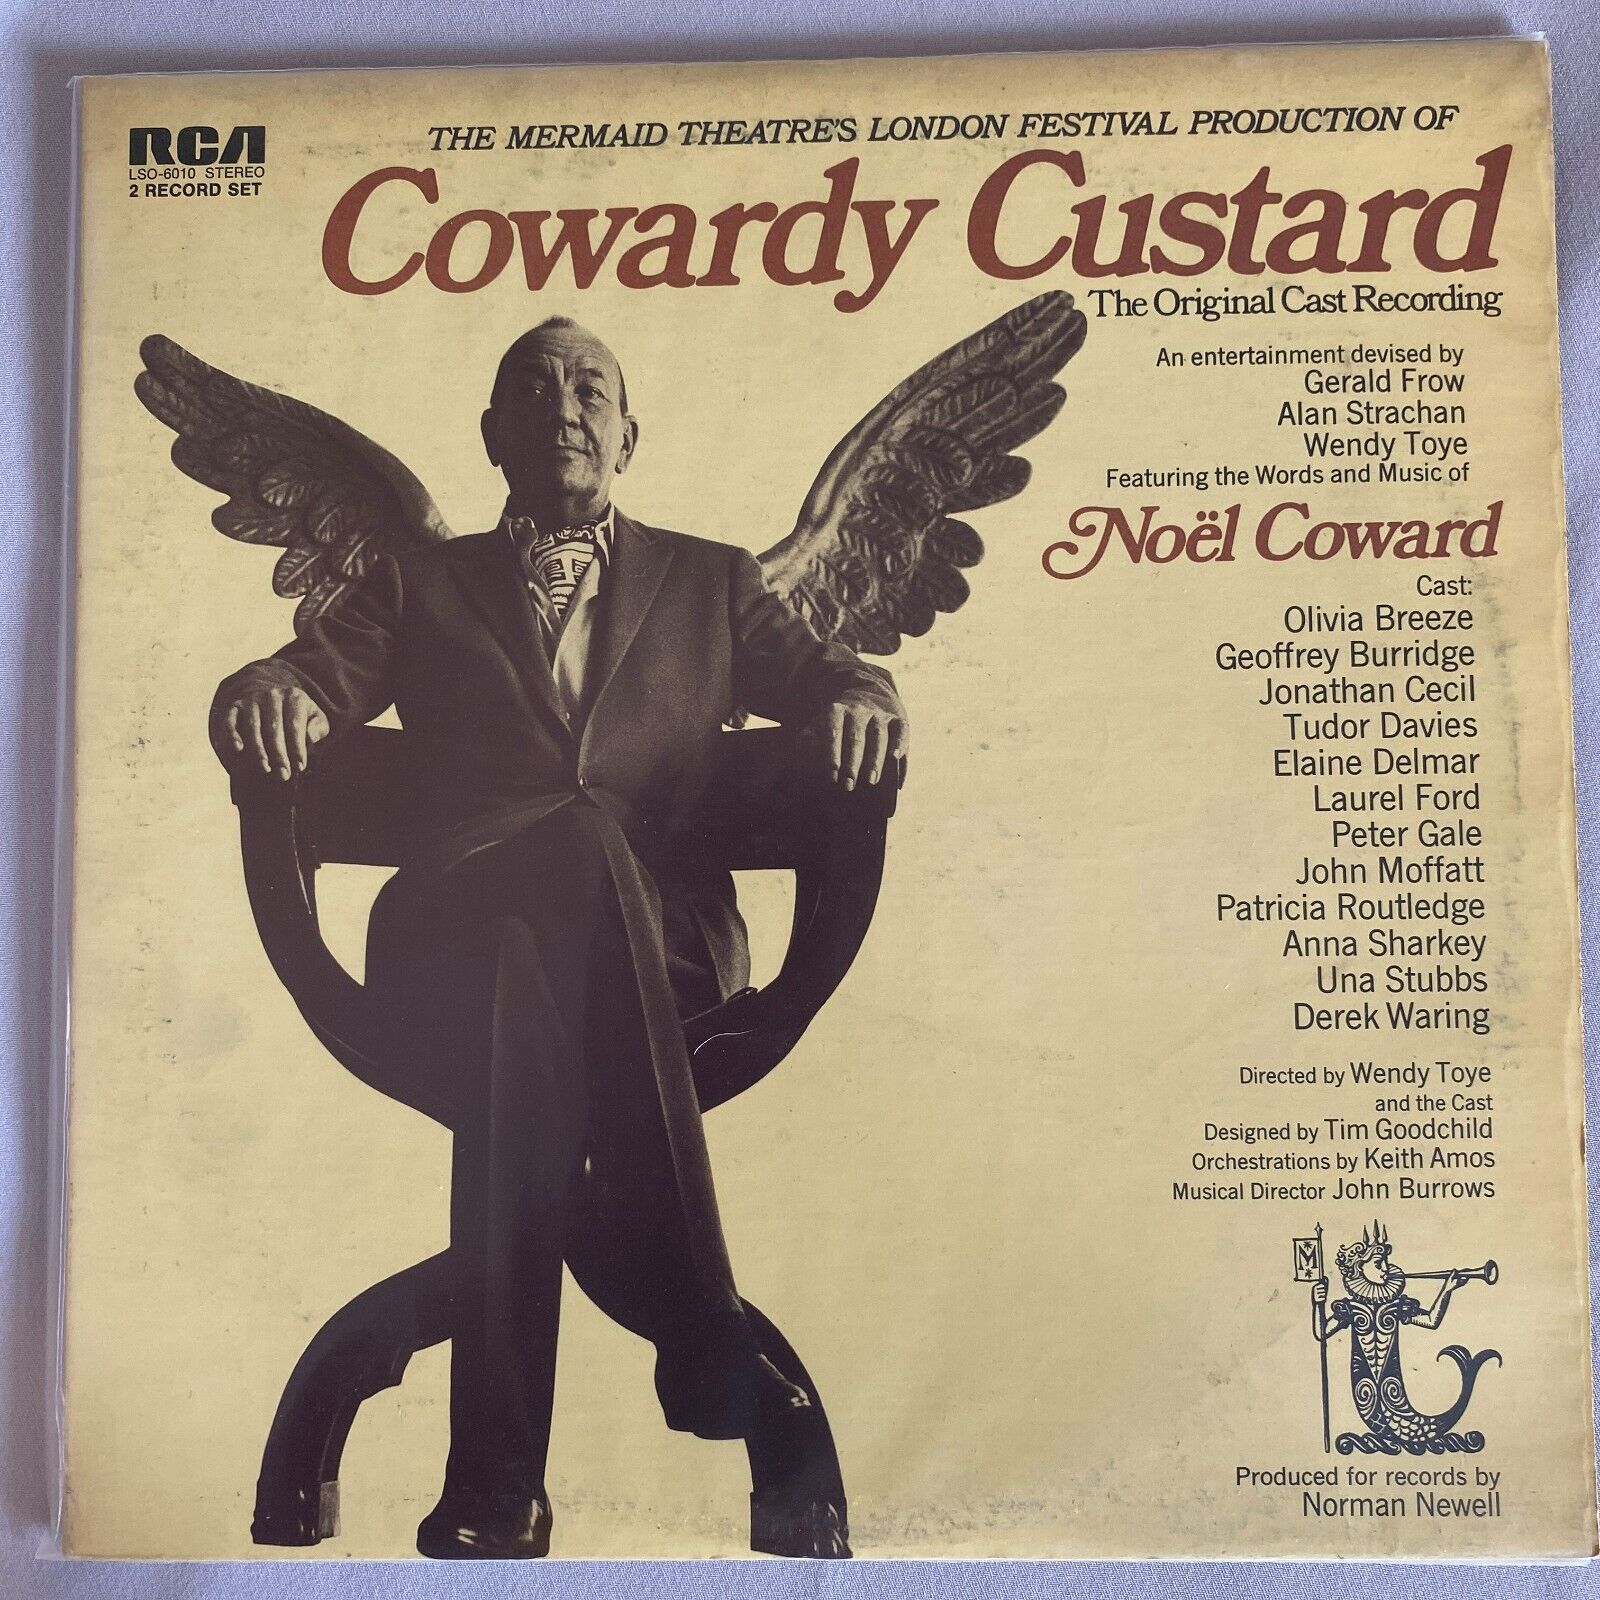 VINTAGE Cowardly Custard Original Cast Recording Noel Coward RCA 2LP LSO-6010